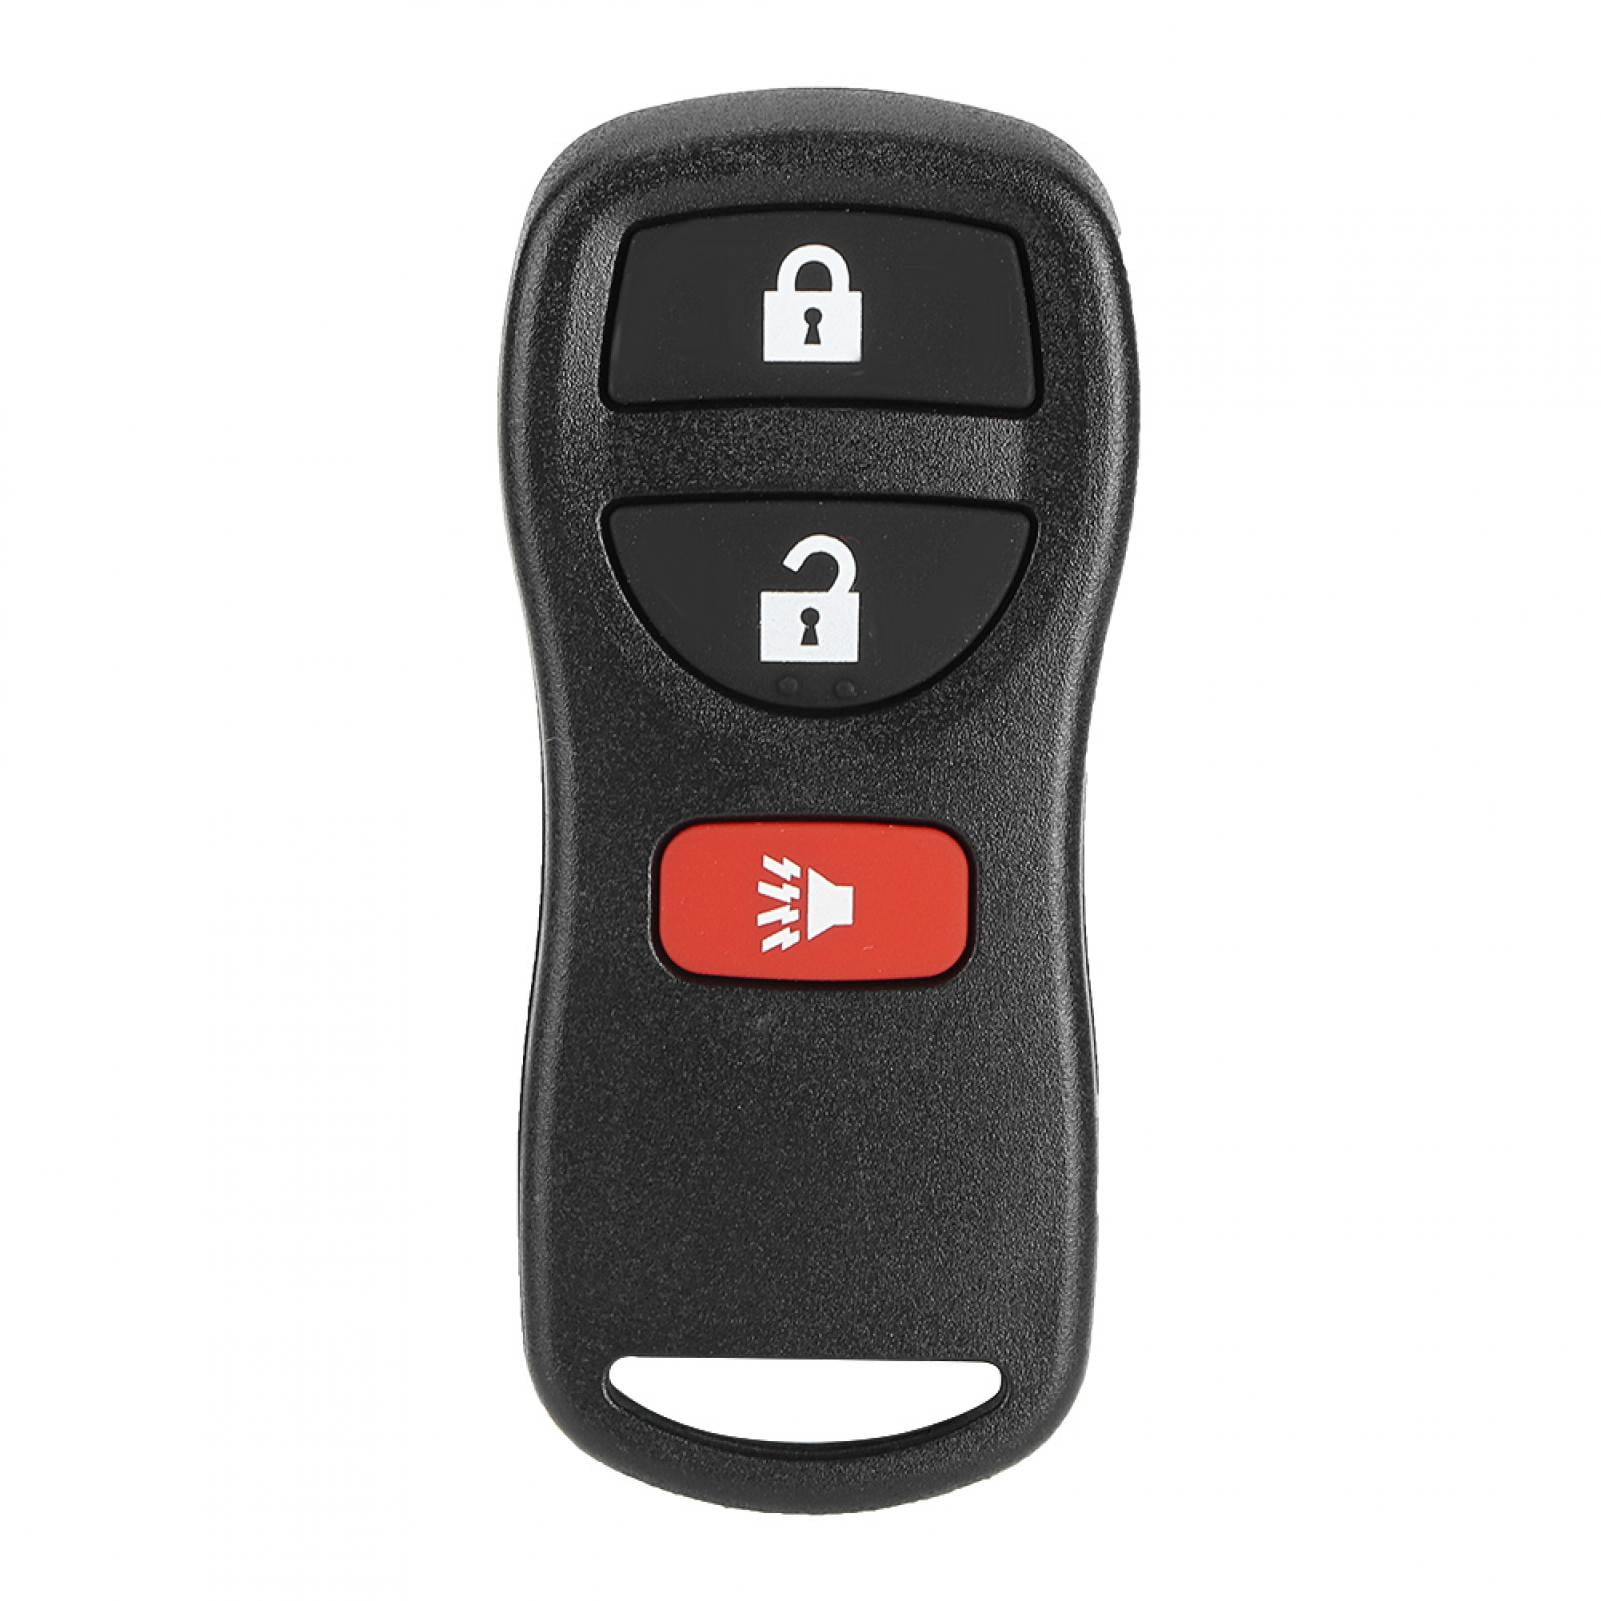 Qiilu CWTWB1U415 3 Buttons Keyless Entry Remote Car Key Fit for Armada Murano Pathfinder Versa KBRASTU15 CWTWB1U733 Remote Control Transmitter High Sensitivity Black Color 